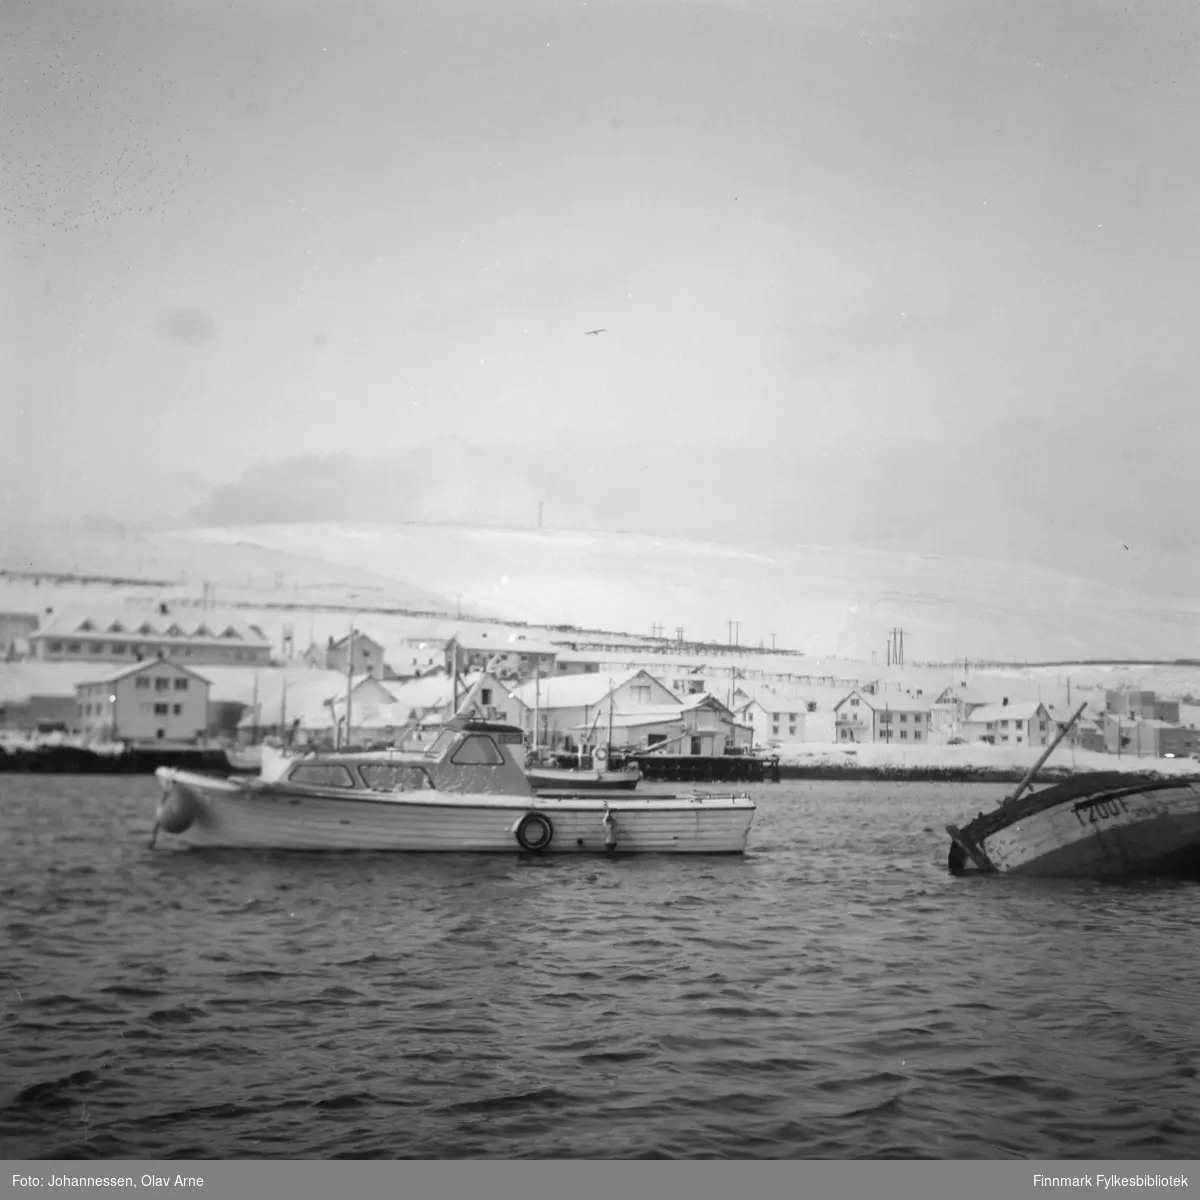 Foto av to båter. Det til høyre har havarert og har teksten  T 200 T malt på siden 

Båten til venstre tilhørte muligens fotograf Olav Johannessen i følge informant